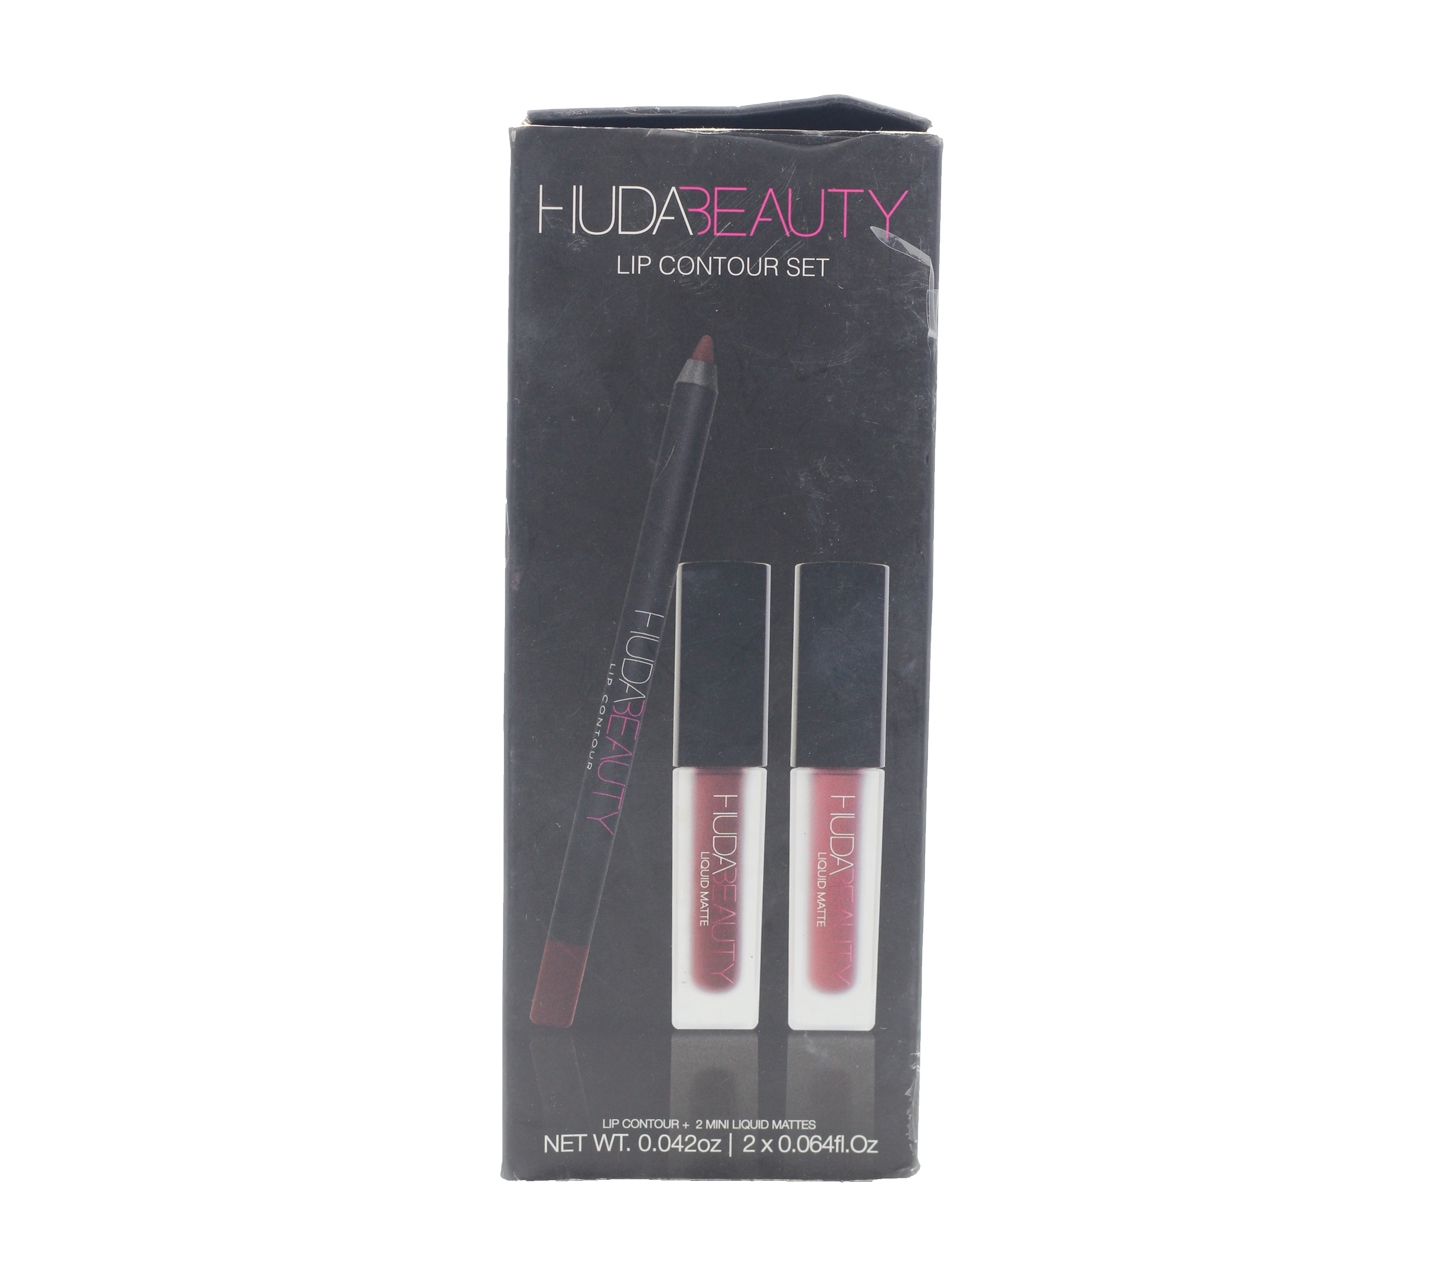 Huda Beauty Lip Contour + Mini Liquid Matters Vixen & Famouse Sets and Palette